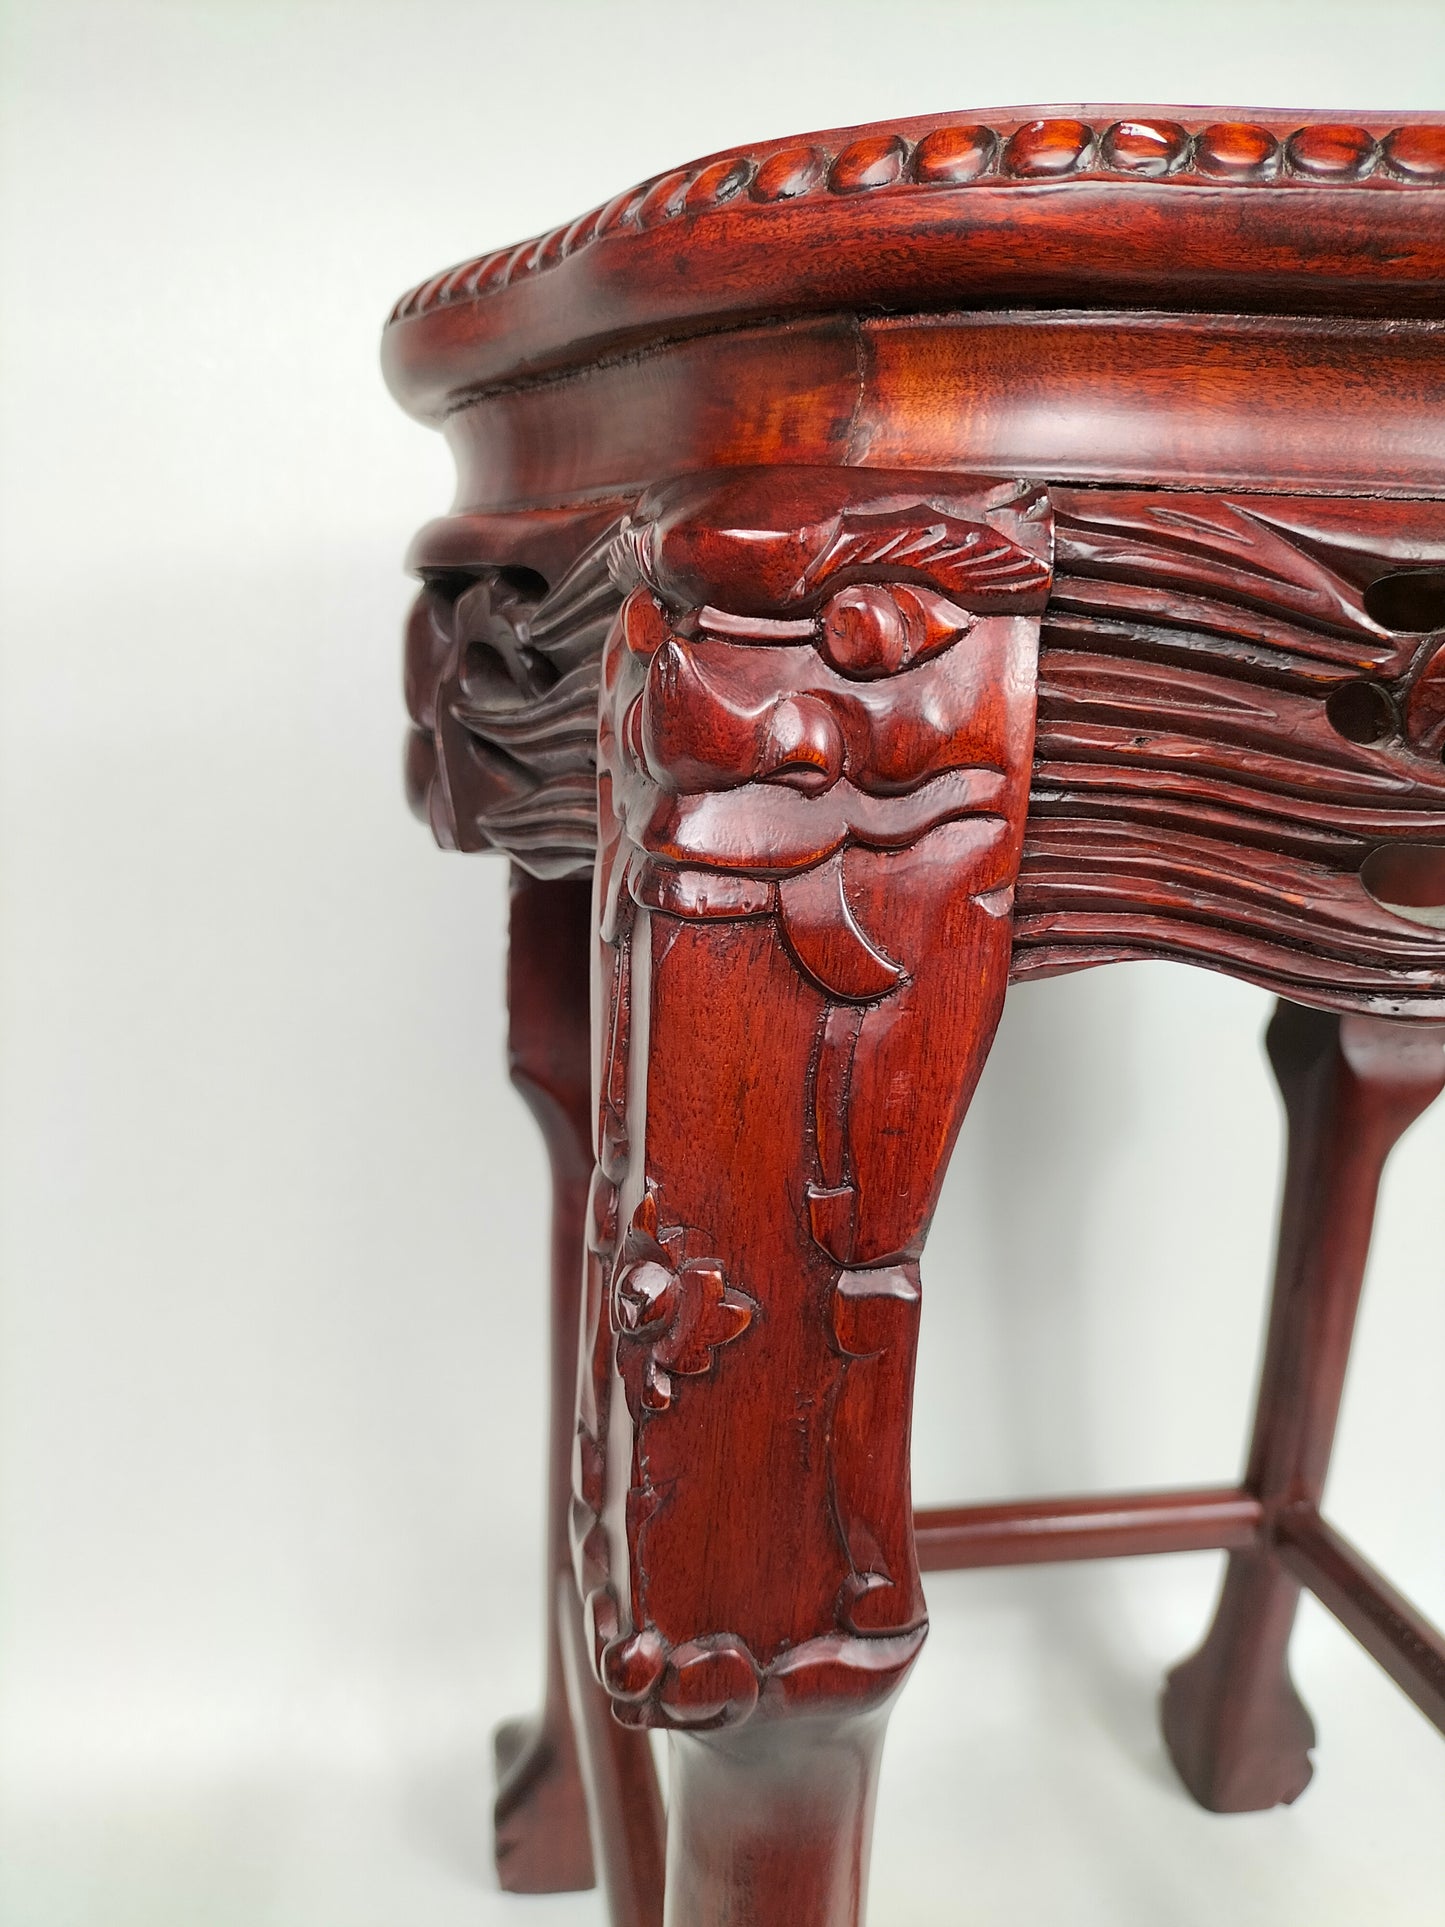 طاولة جانبية خشبية صينية مطعمة بسطح من الرخام // خشب الورد - القرن العشرين